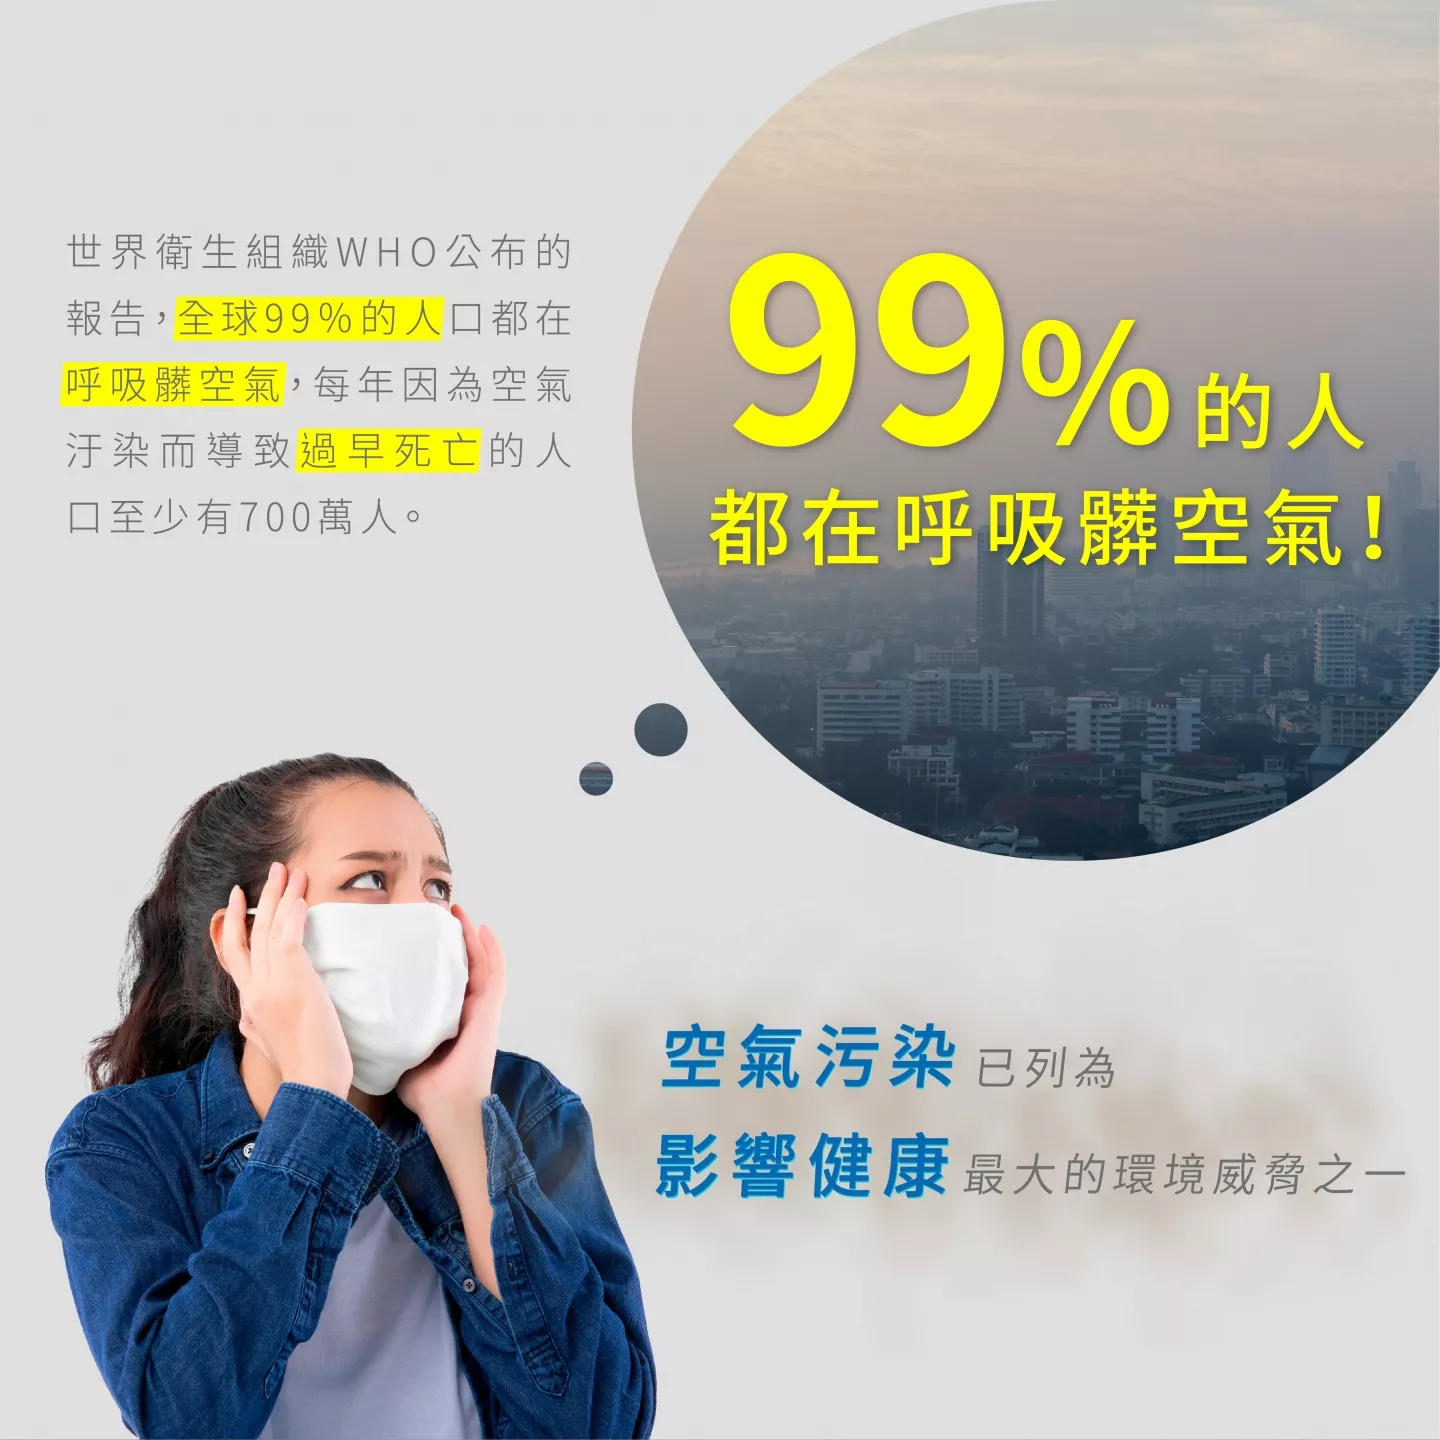 全球99%的人都在呼吸髒空氣 空氣污染已列為影響健康最大環境威脅之一